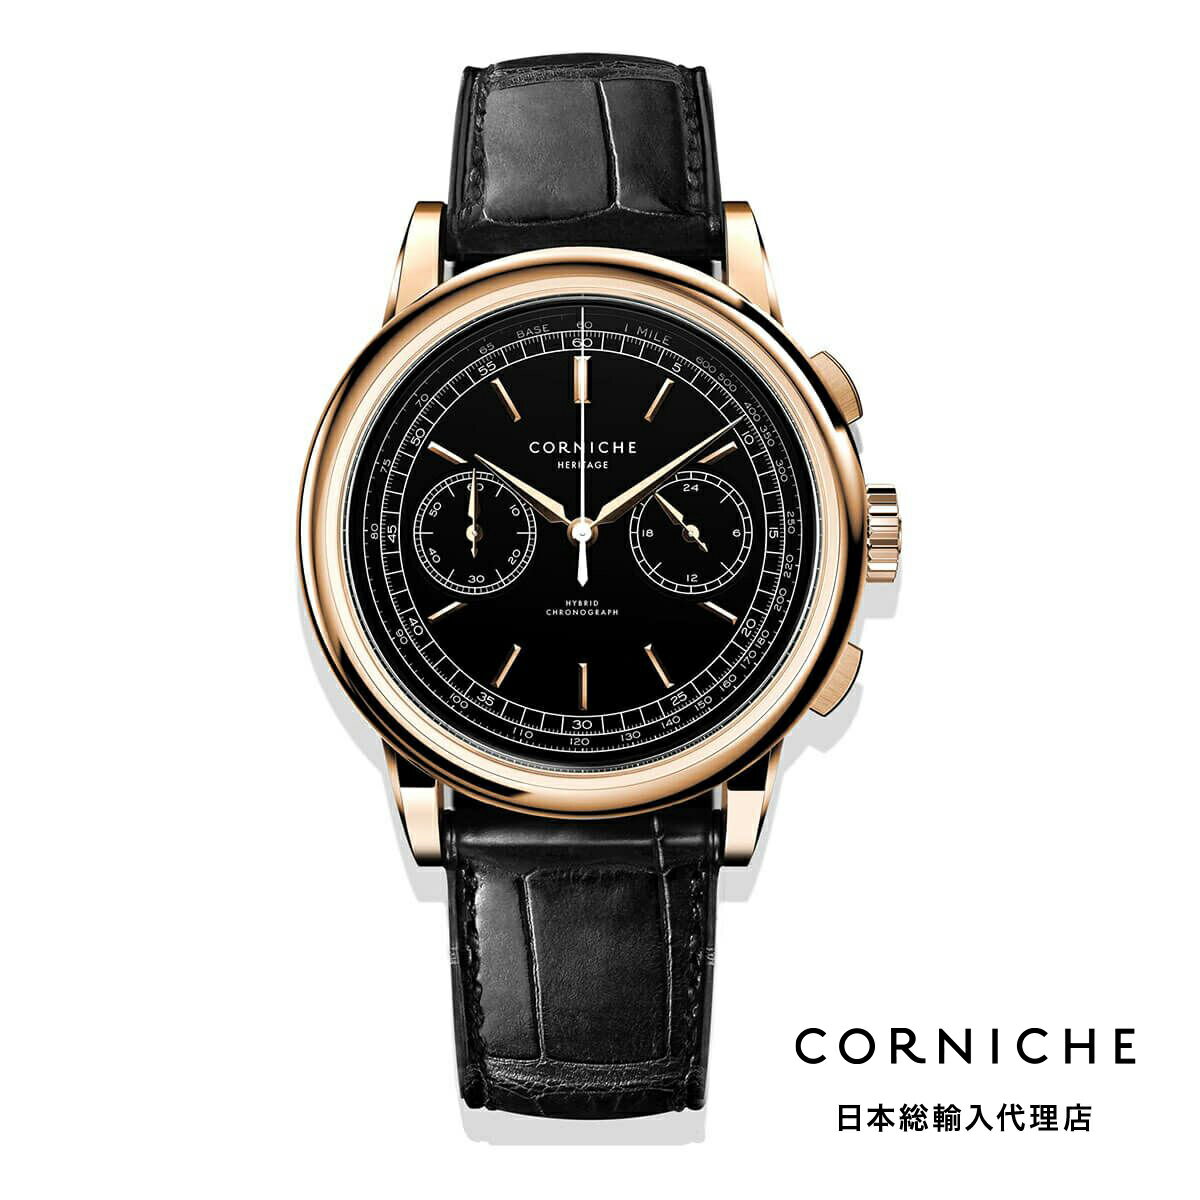 楽天H°M’S” WatchStoreコーニッシュ CORNICHE ヘリテージ クロノグラフ ブラック ローズゴールド レザーベルト 腕時計 メンズ